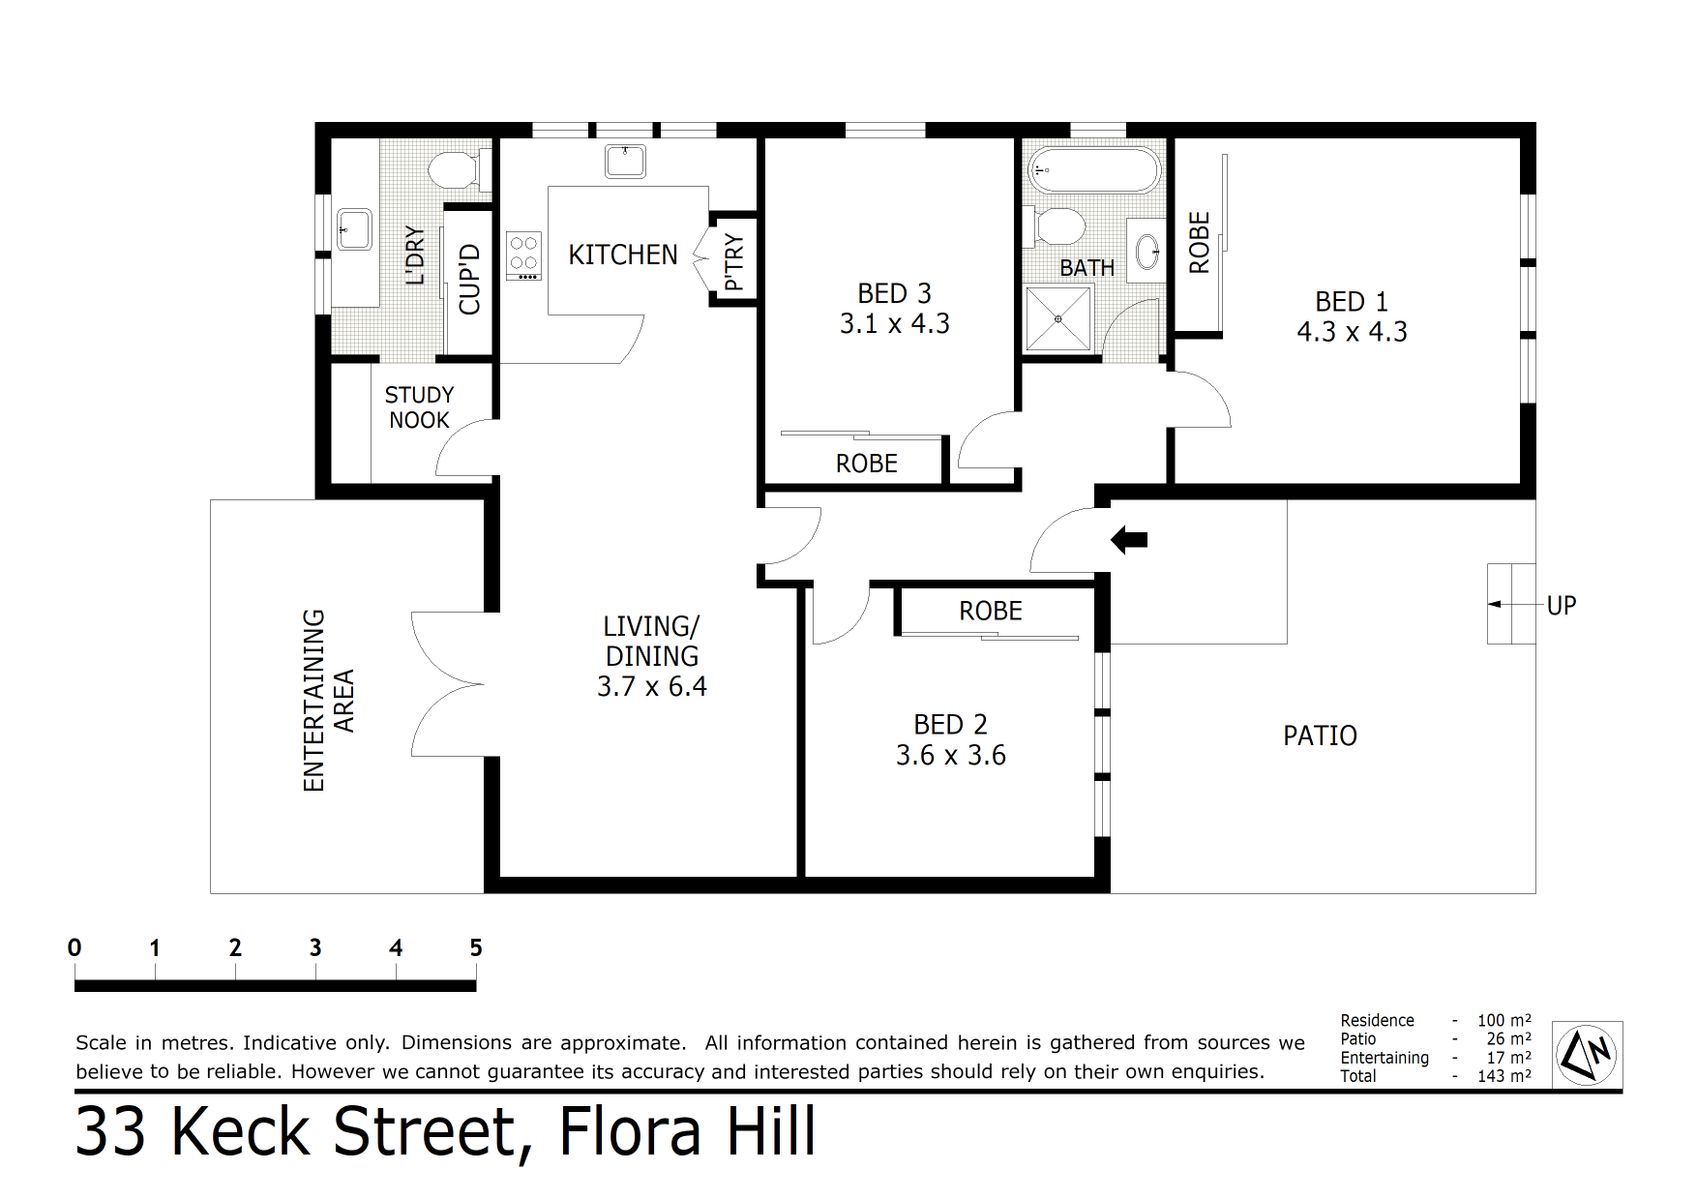 33 Keck Street Flora Hill (19 OCT 2022) 100sqm